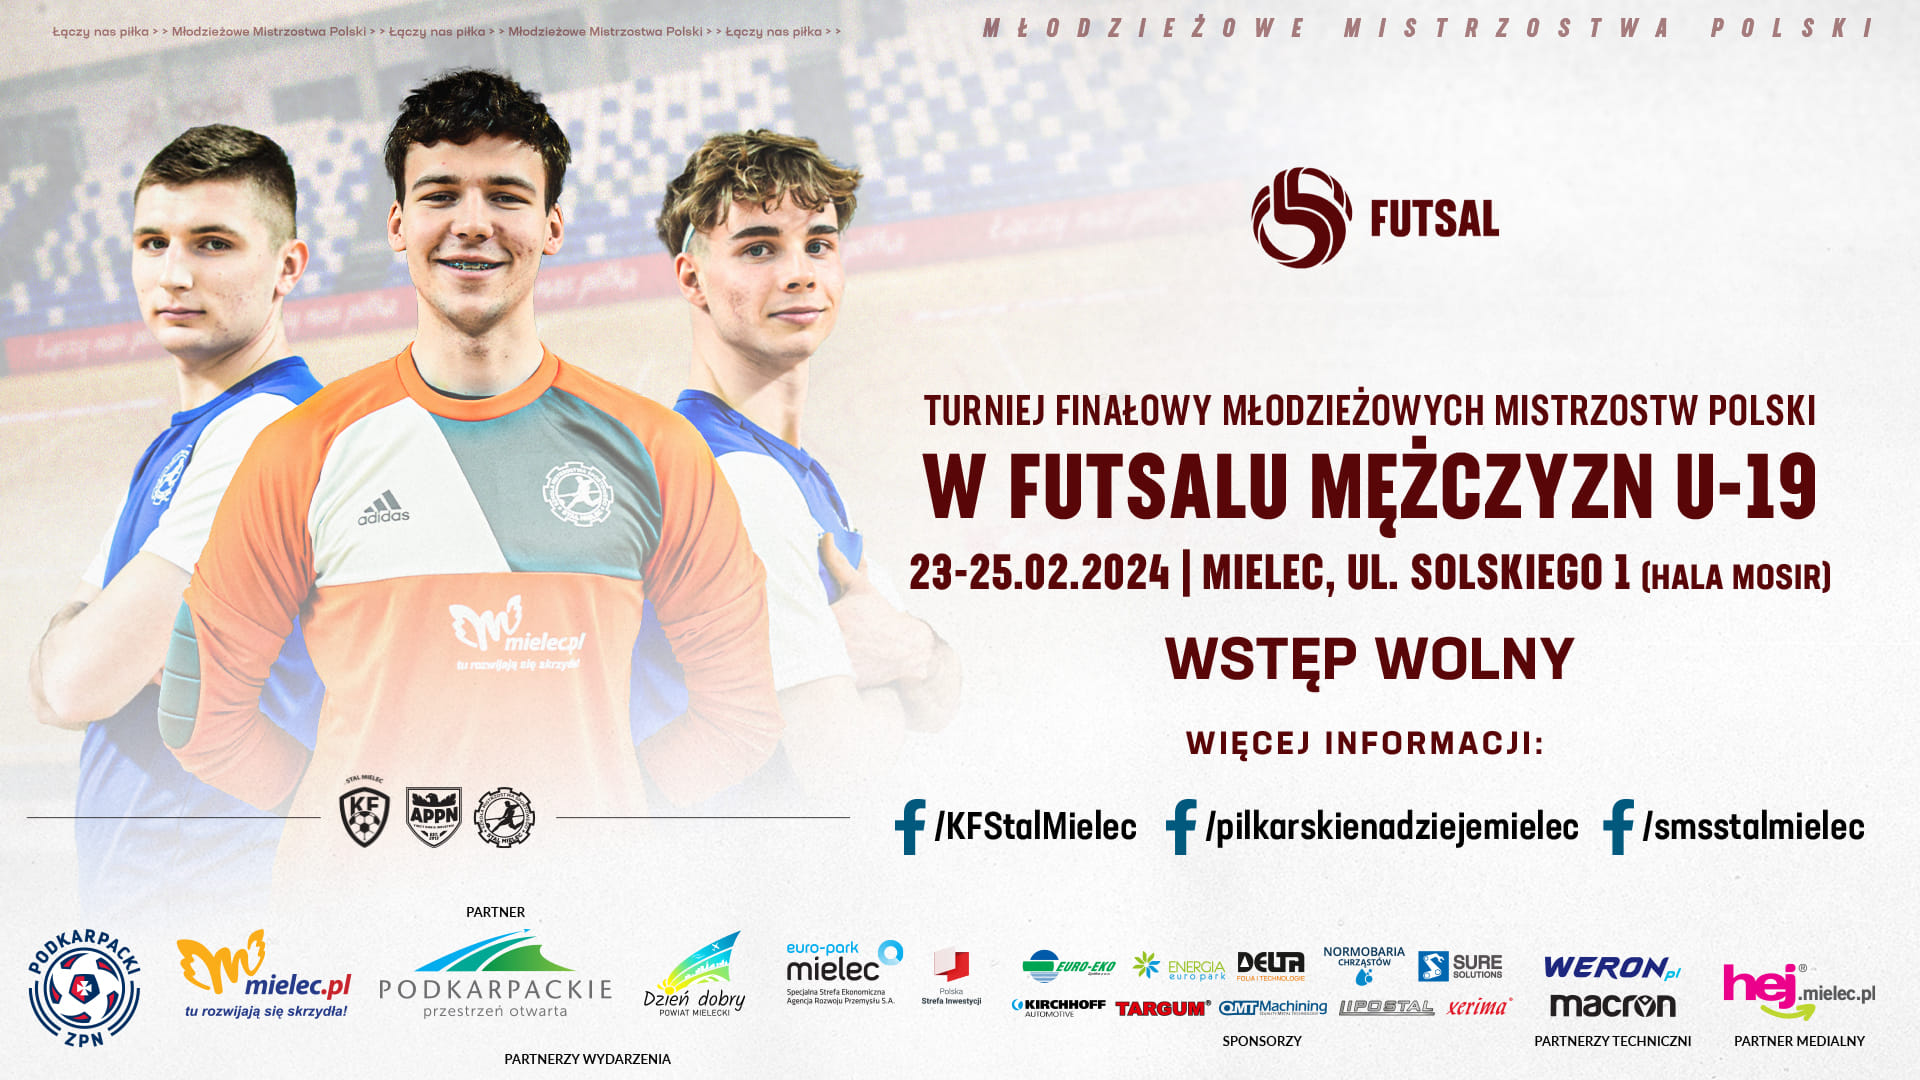 Zapraszamy na mistrzostwa Polski U19 w futsalu